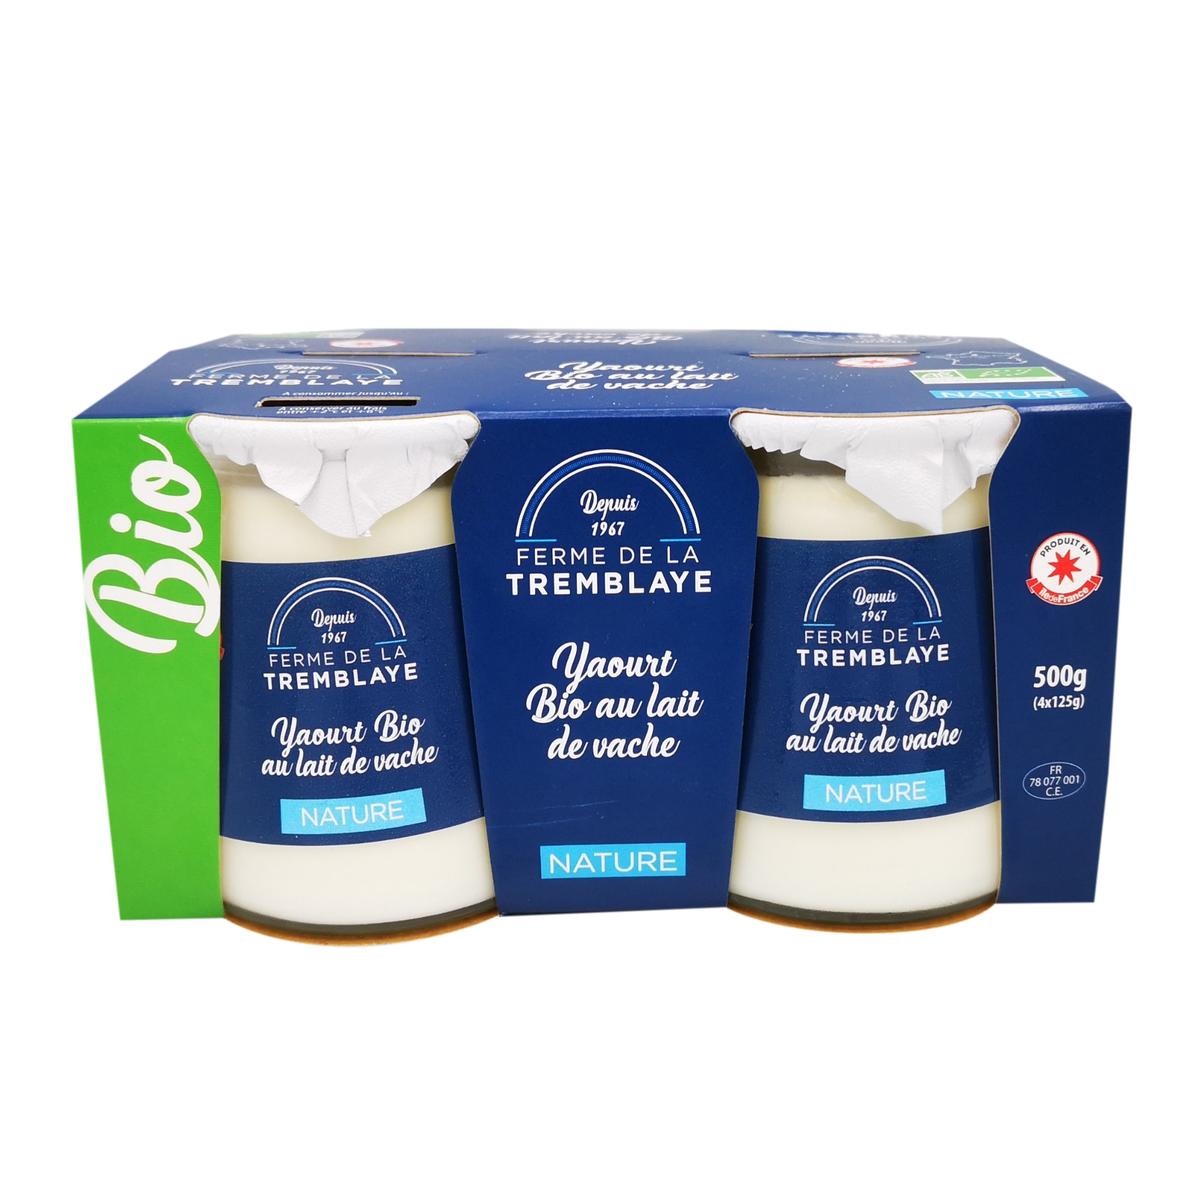 Pack yaourt brassé au lait entier de vache pour bébé dès 6 mois - FRANCE  BéBé BIO